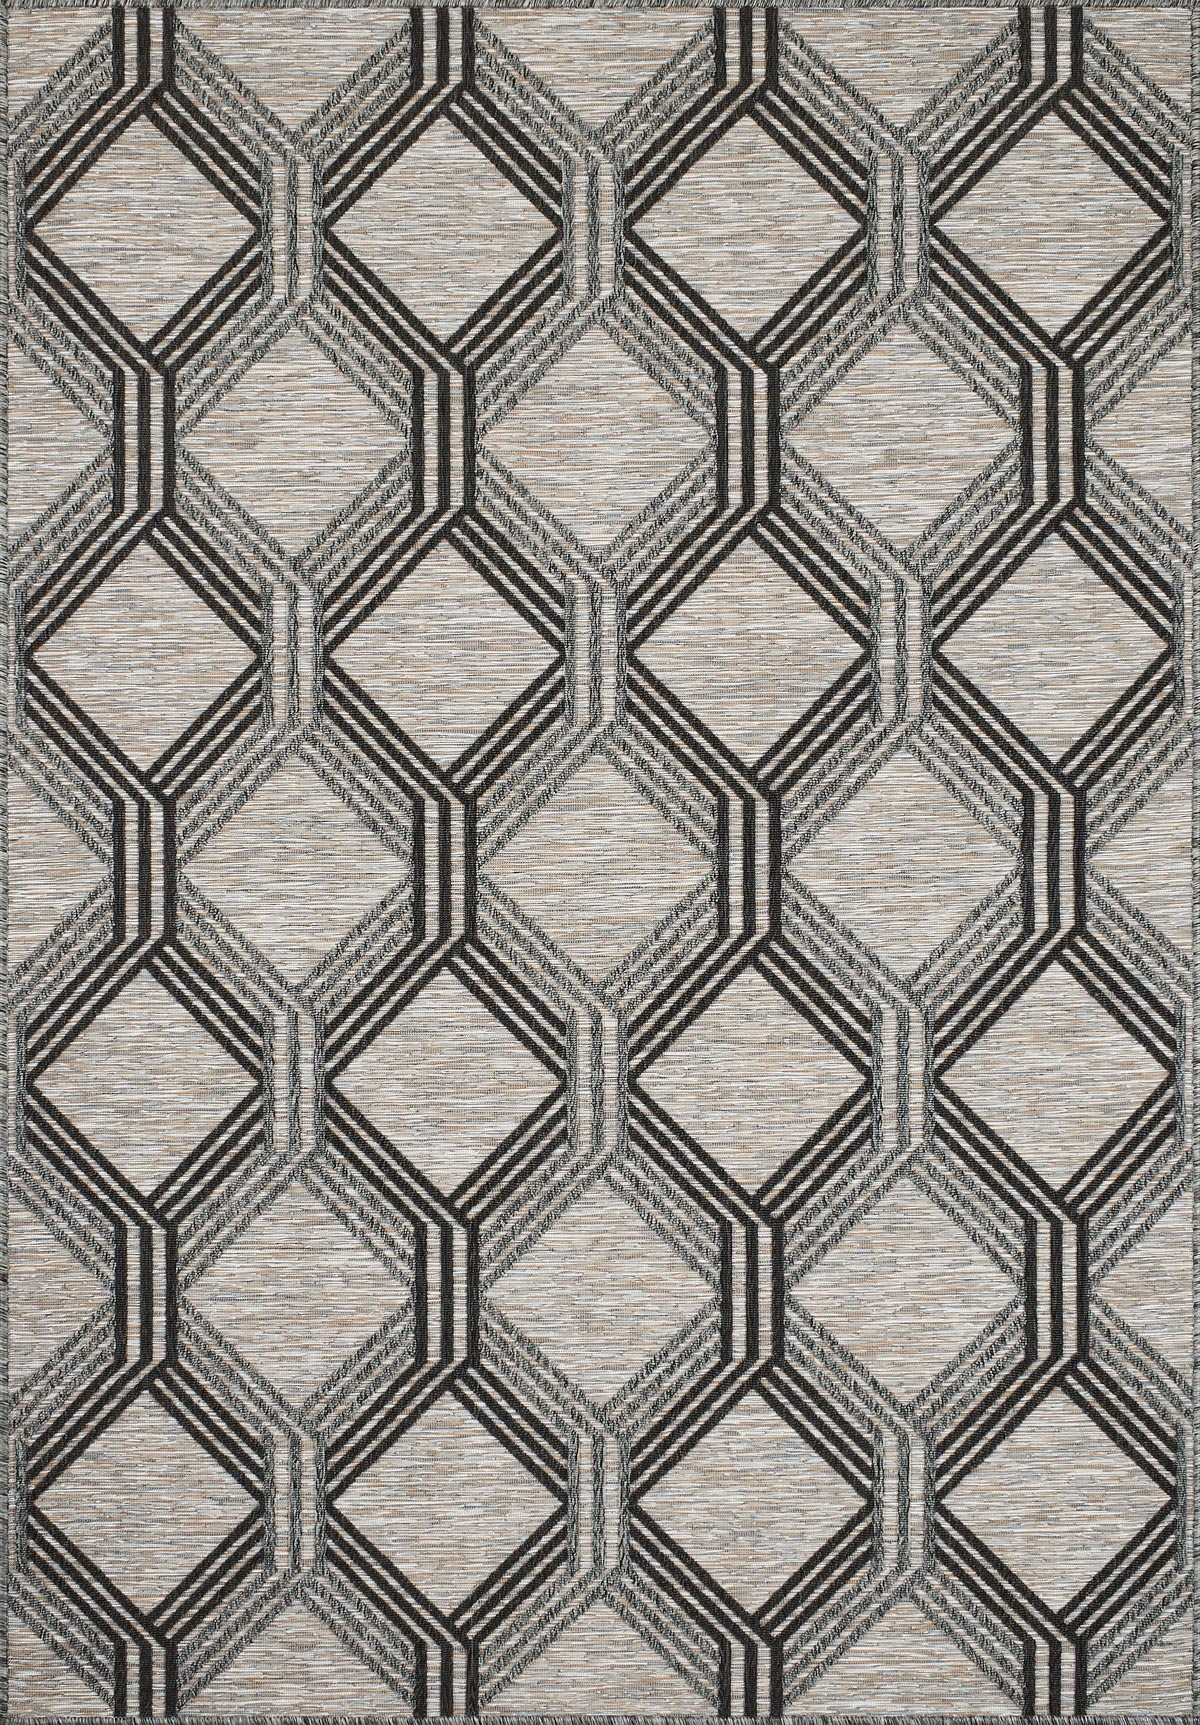 Tapis intérieur/extérieur motif géométrique gris et anthracite 160x230